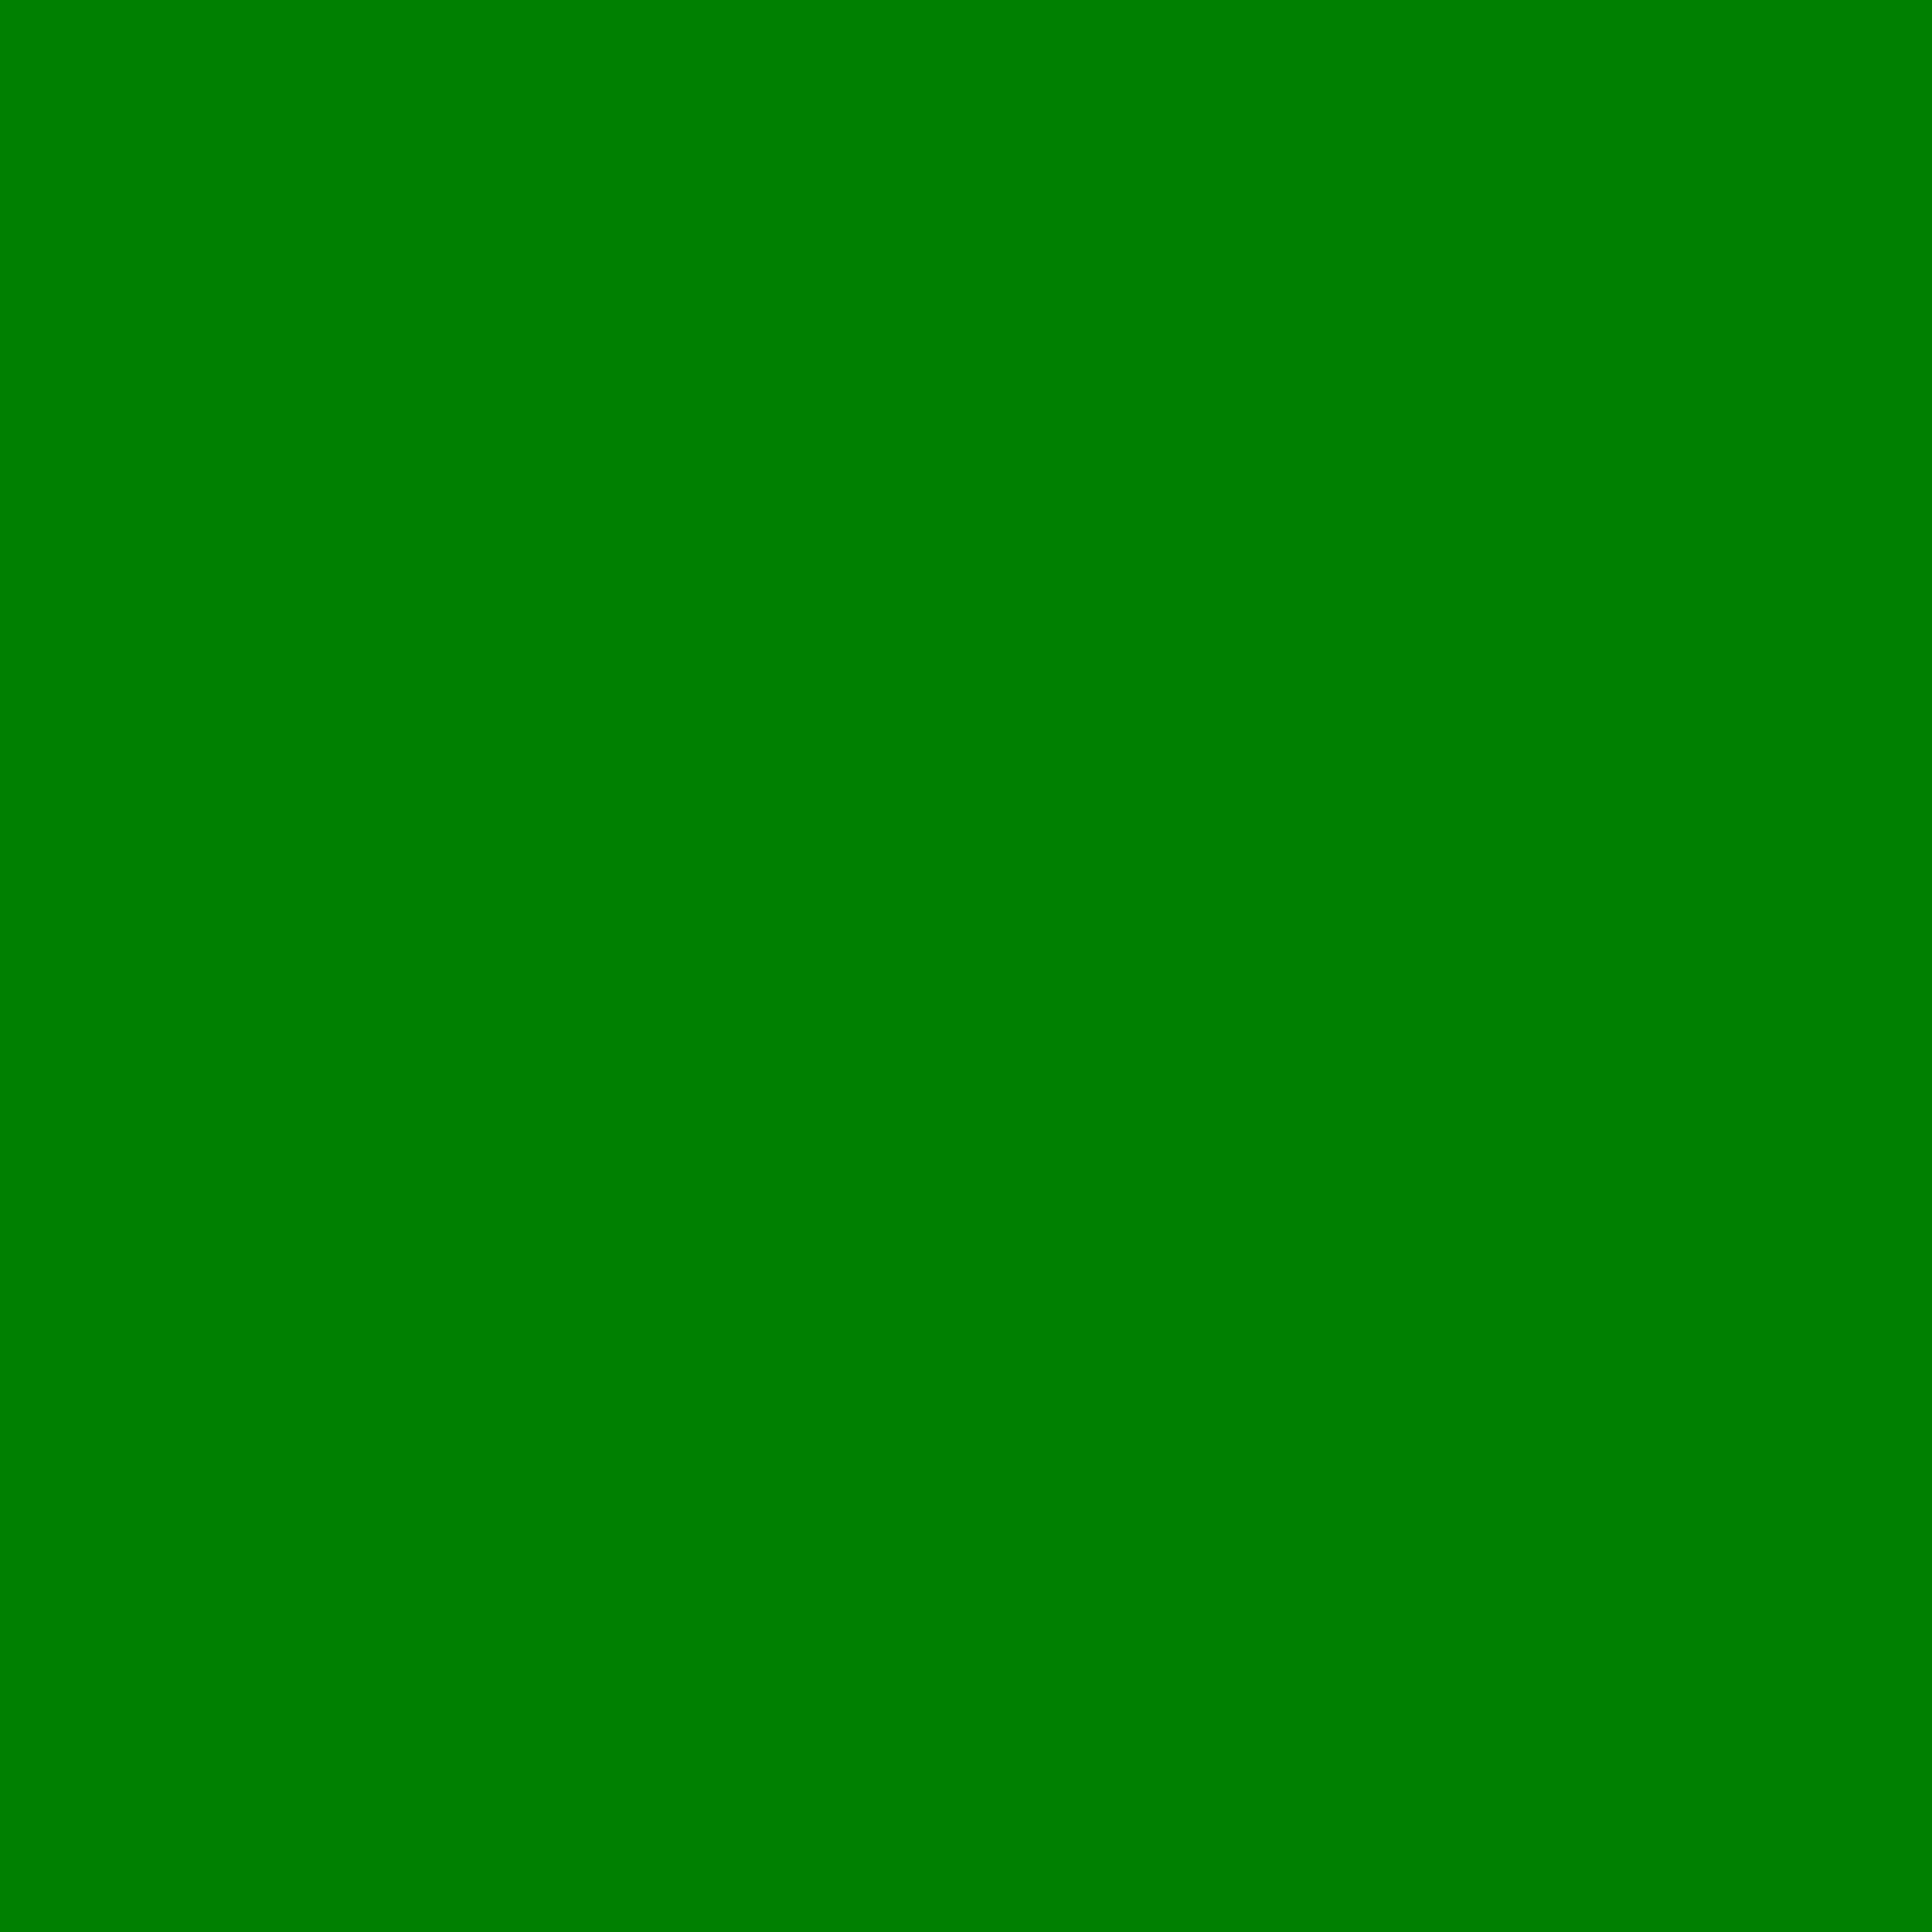 Ý nghĩa Green background meaning Trong phong thủy và ngôn ngữ hình ảnh